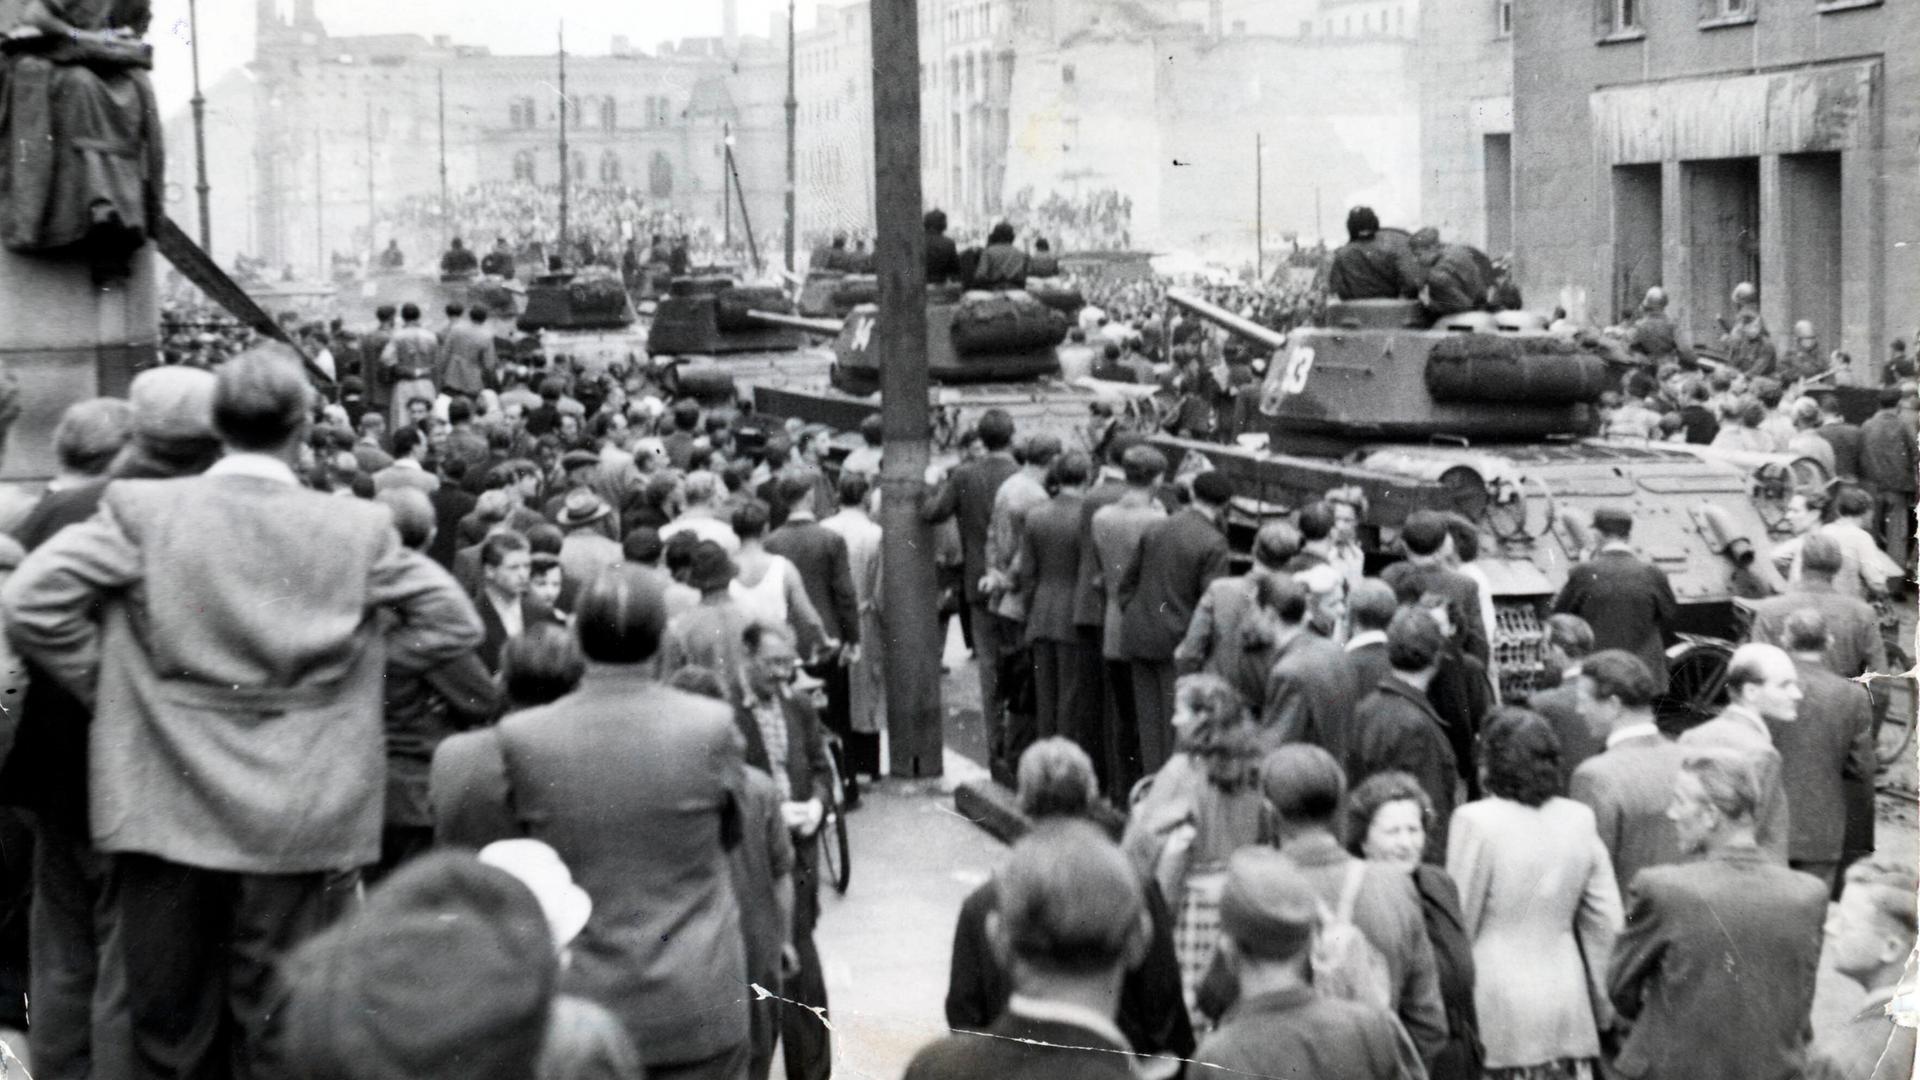  Ost-Berlin am 17.Juni 1953: Demonstrierende vor sowjetischen T-34 Panzern am "Haus der Ministerien" in der Leipziger Straße.